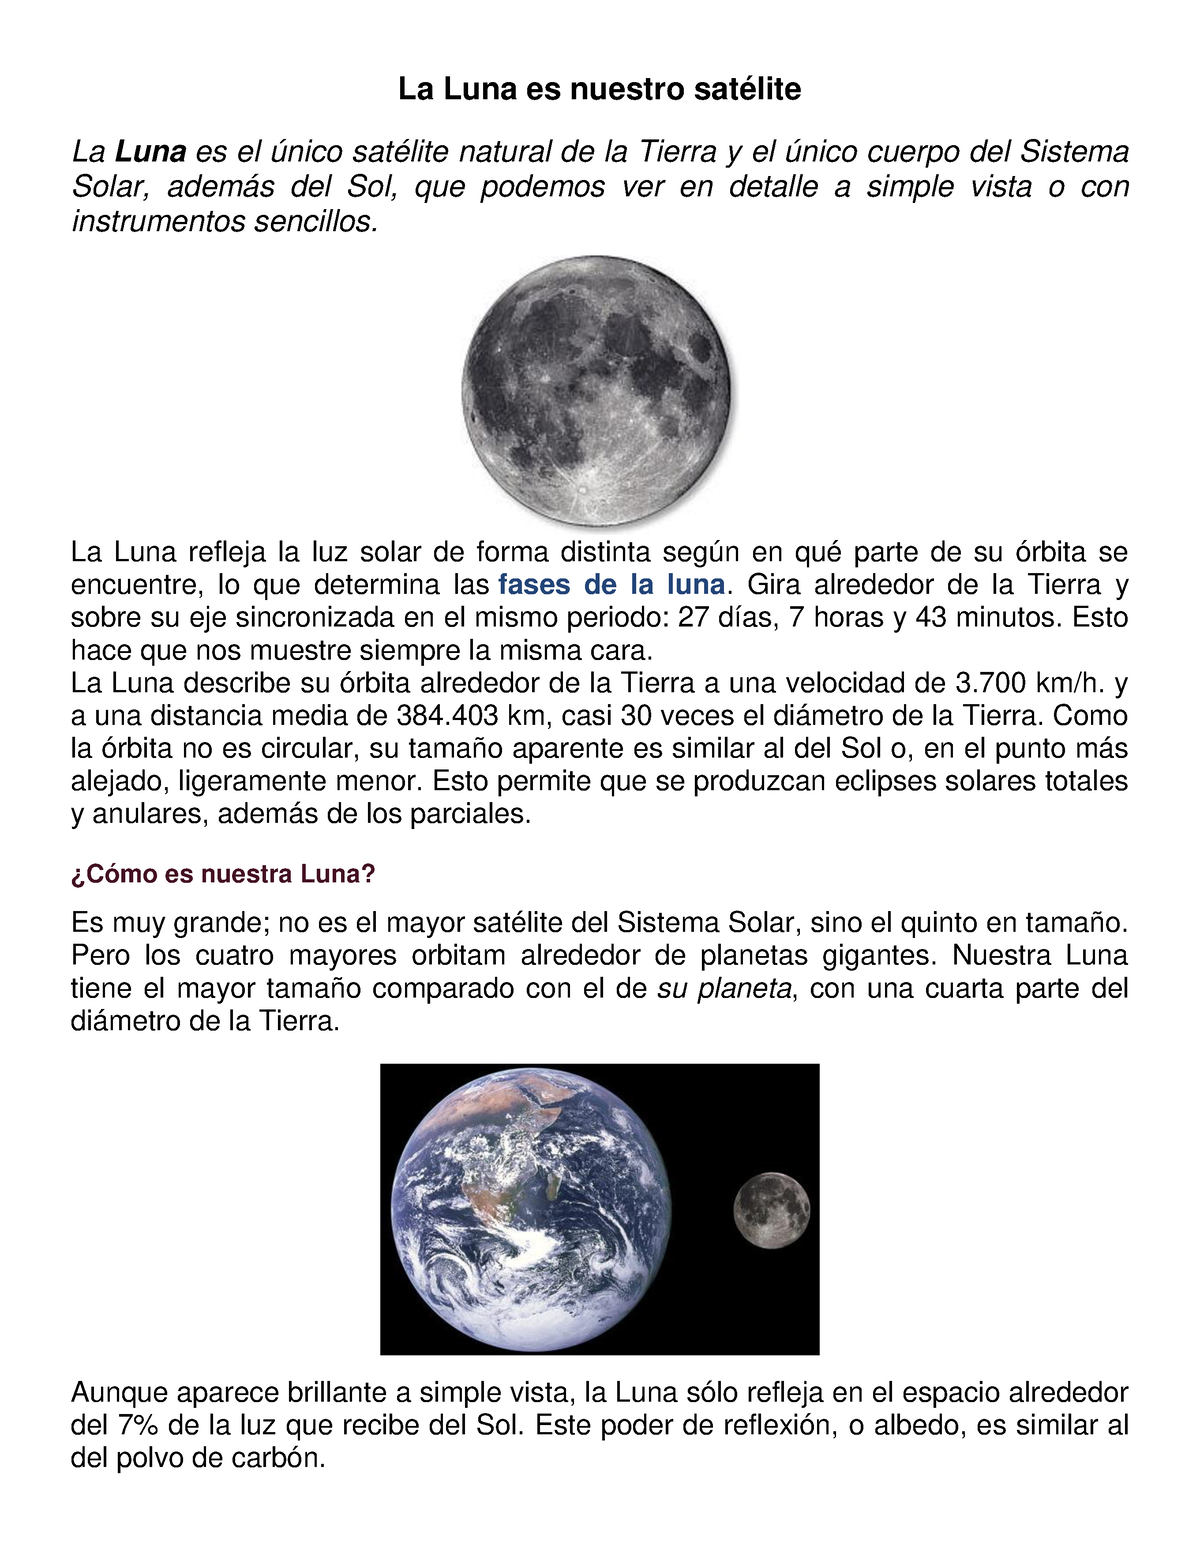 La luna es nuestro satelite Acompaña ciclos relacionados con nuestra vida  en la tierra. Te invito a observarte en este lunario, para…